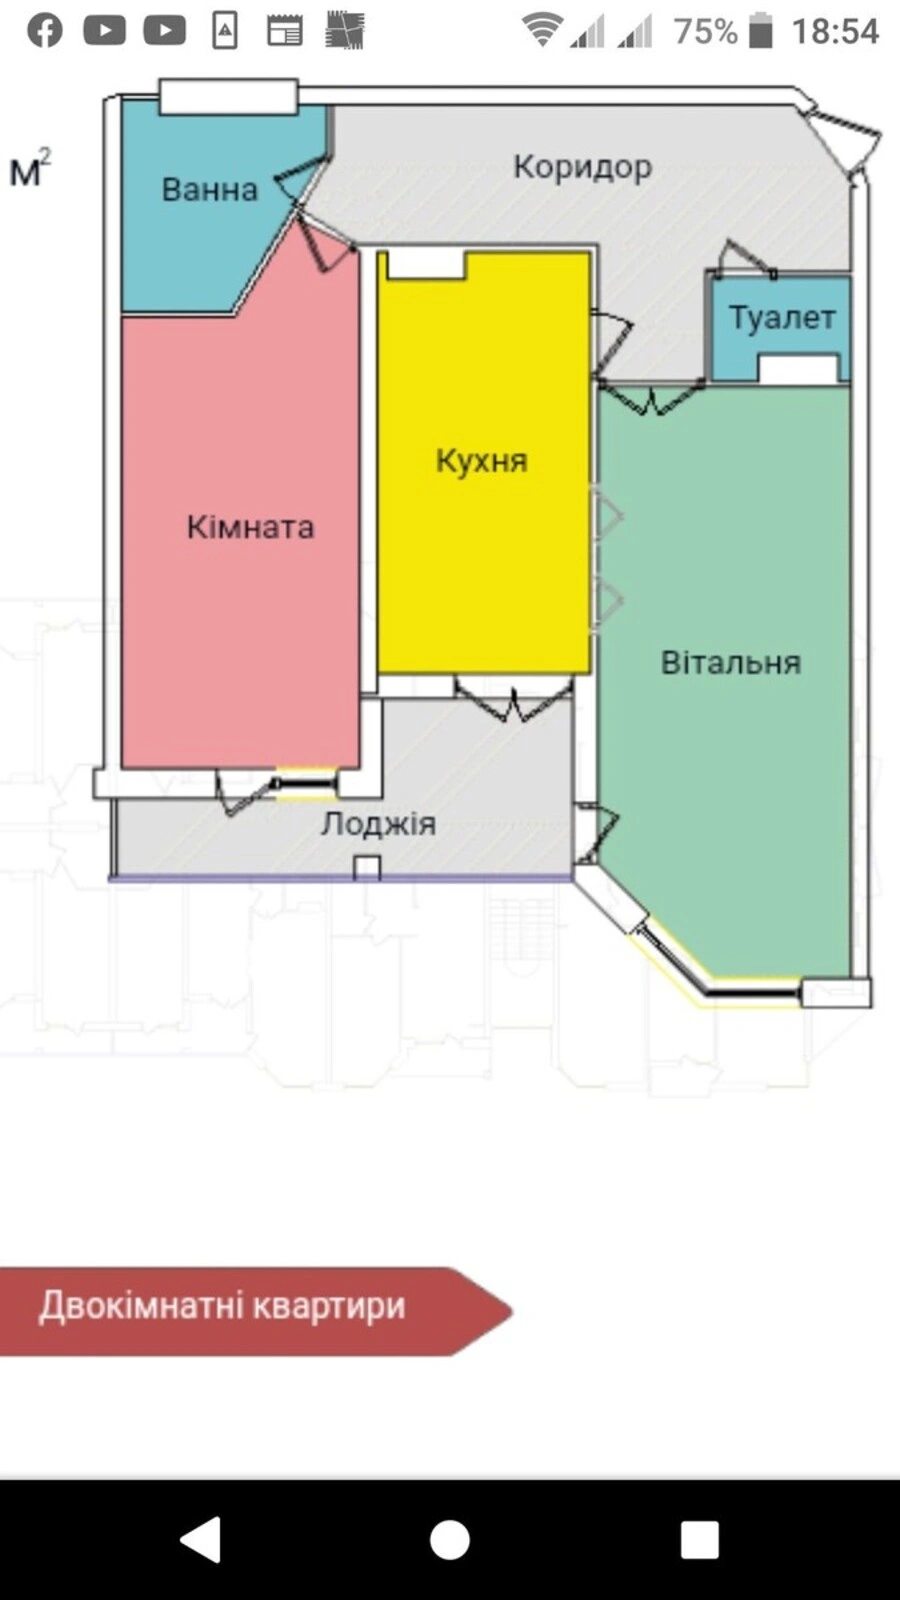 Продаж 2 кімнатної квартири, 77 м.кв., вул. Київська